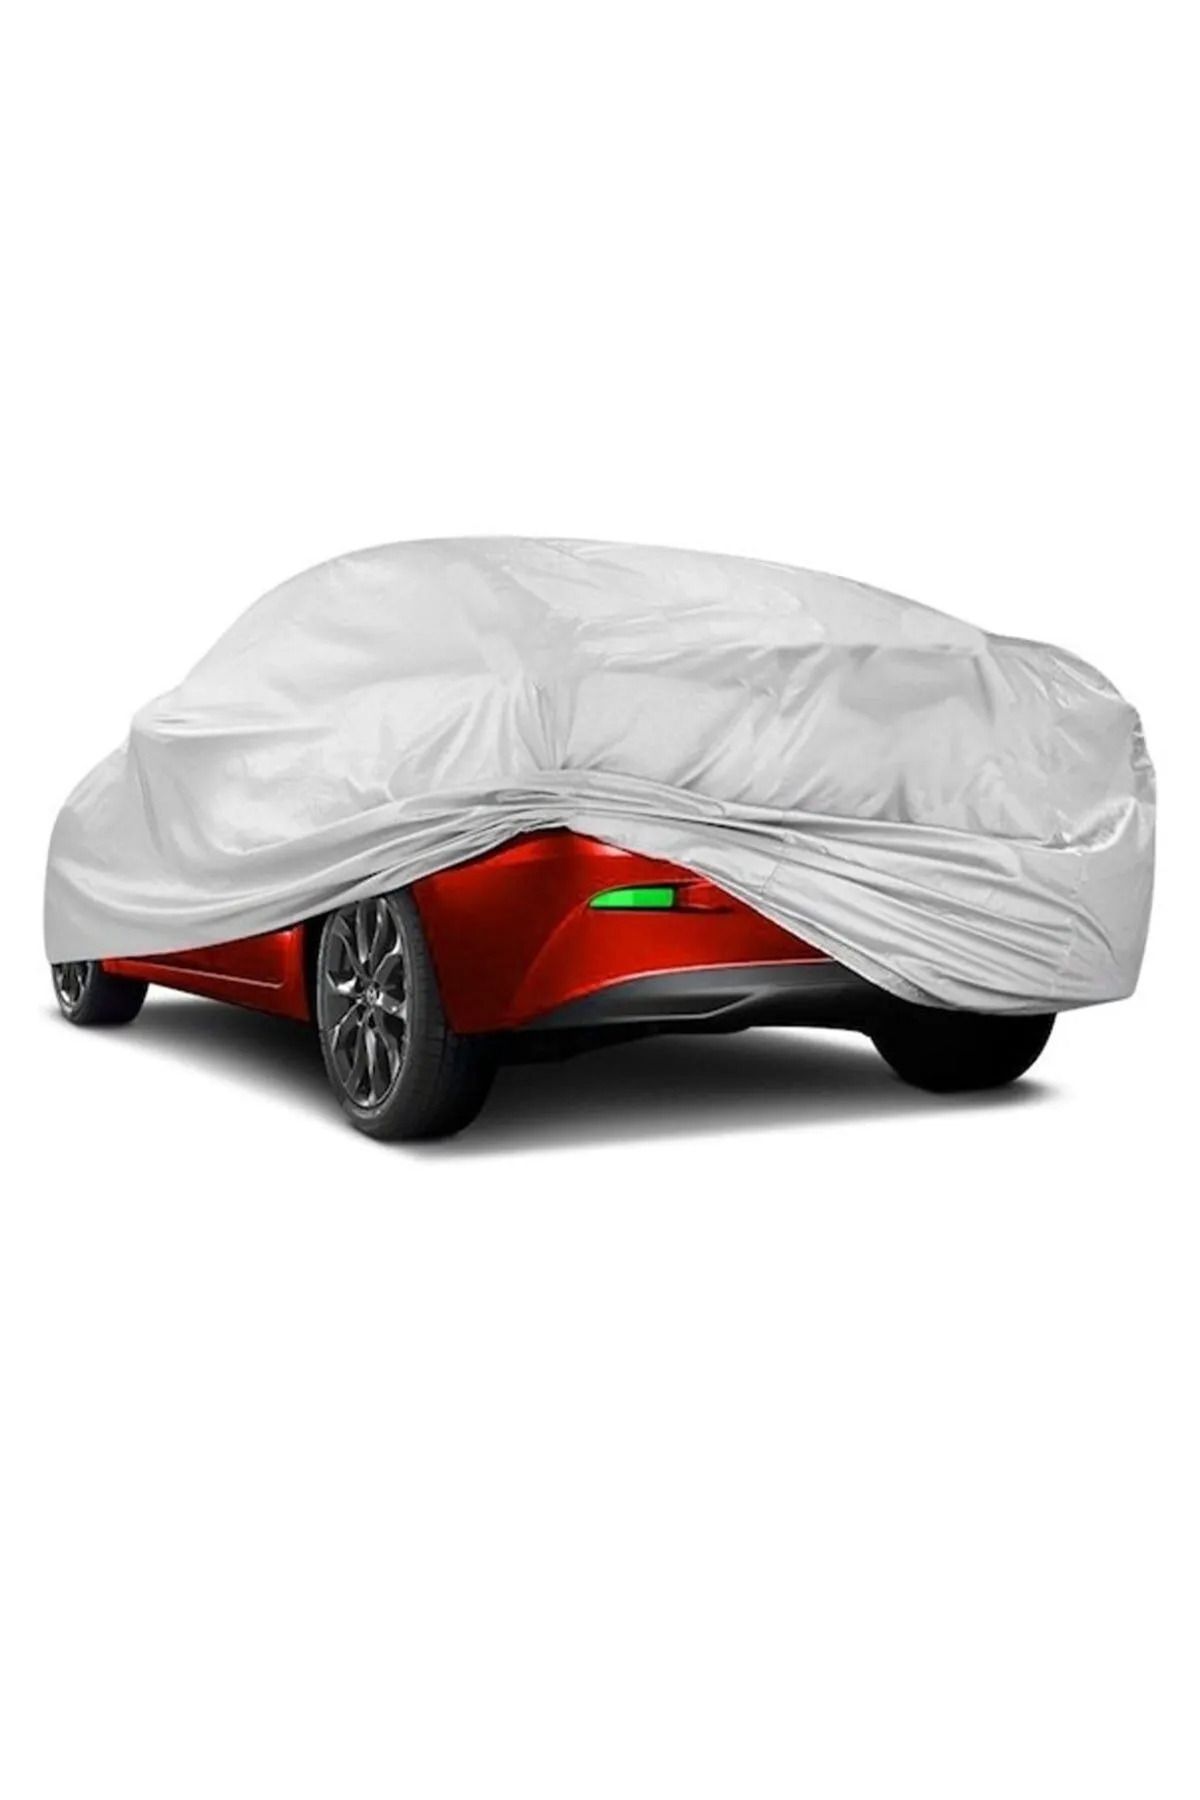 PlusOto Volkswagen Eos Compatible Car Tarpaulin, Vehicle Cover, Tent -  Trendyol